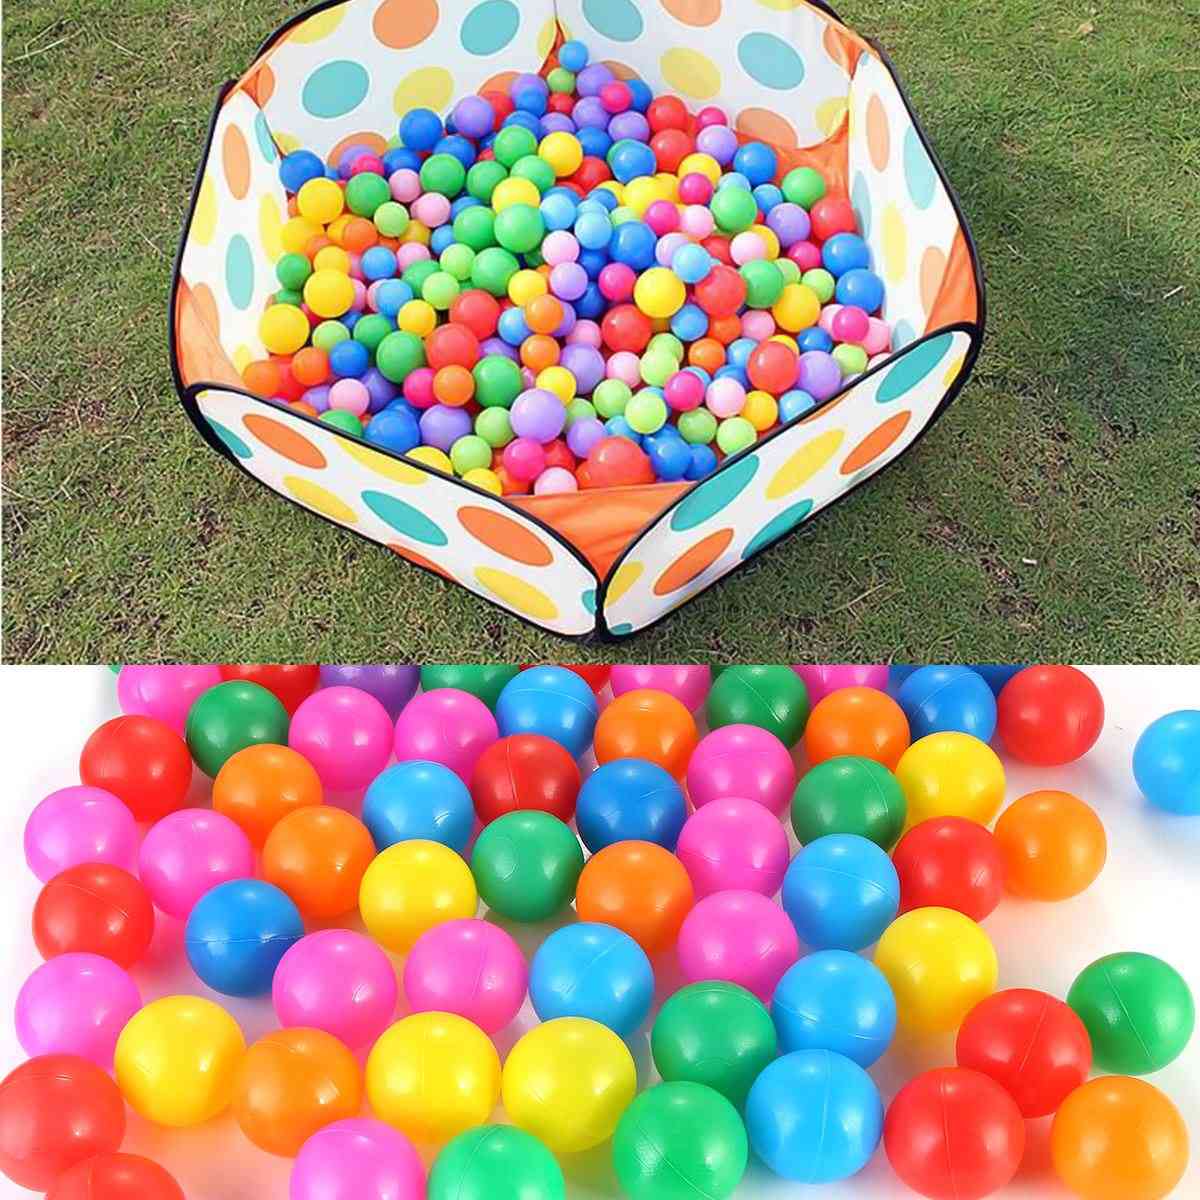 100 бр. 4 см цветове бебешки пластмасови топки - воден басейн океанска вълна топка, деца плуване яма с баскетбол обръч игра къща на открито палатки играчка (4 см)